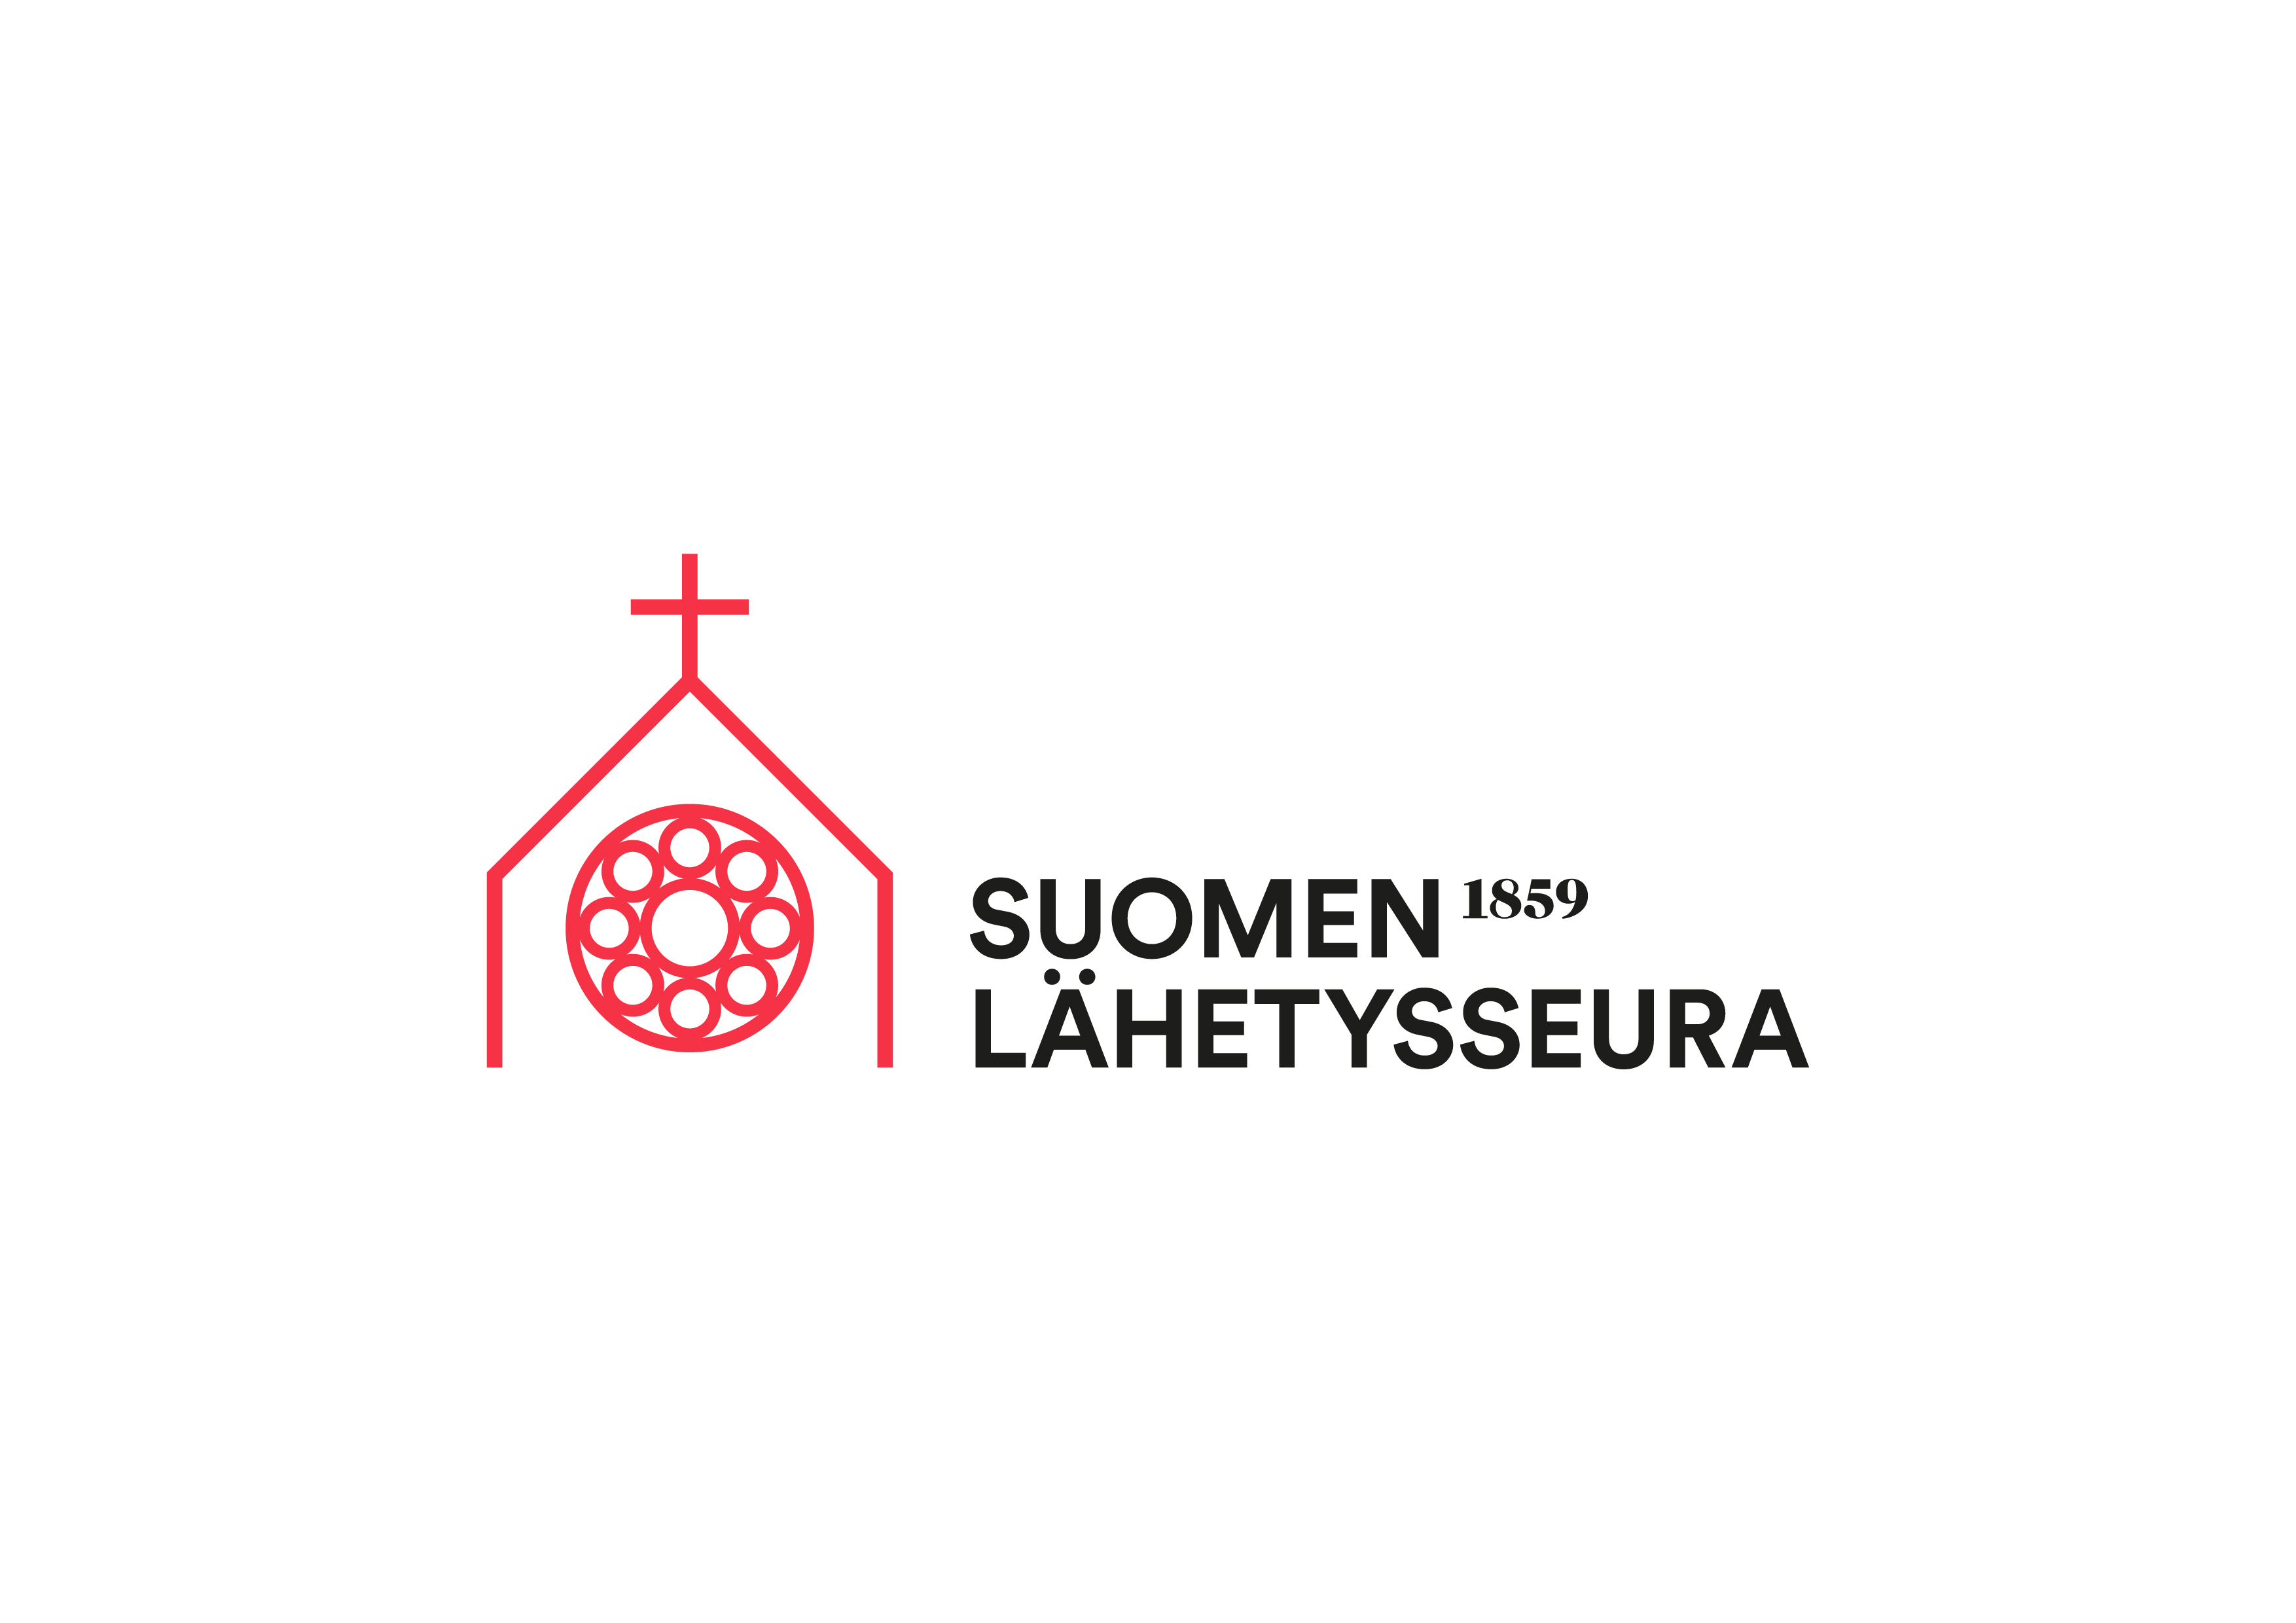 teksti suomen lähetysseura 1859 ja graafinen logo punaisella risti ylhäällä